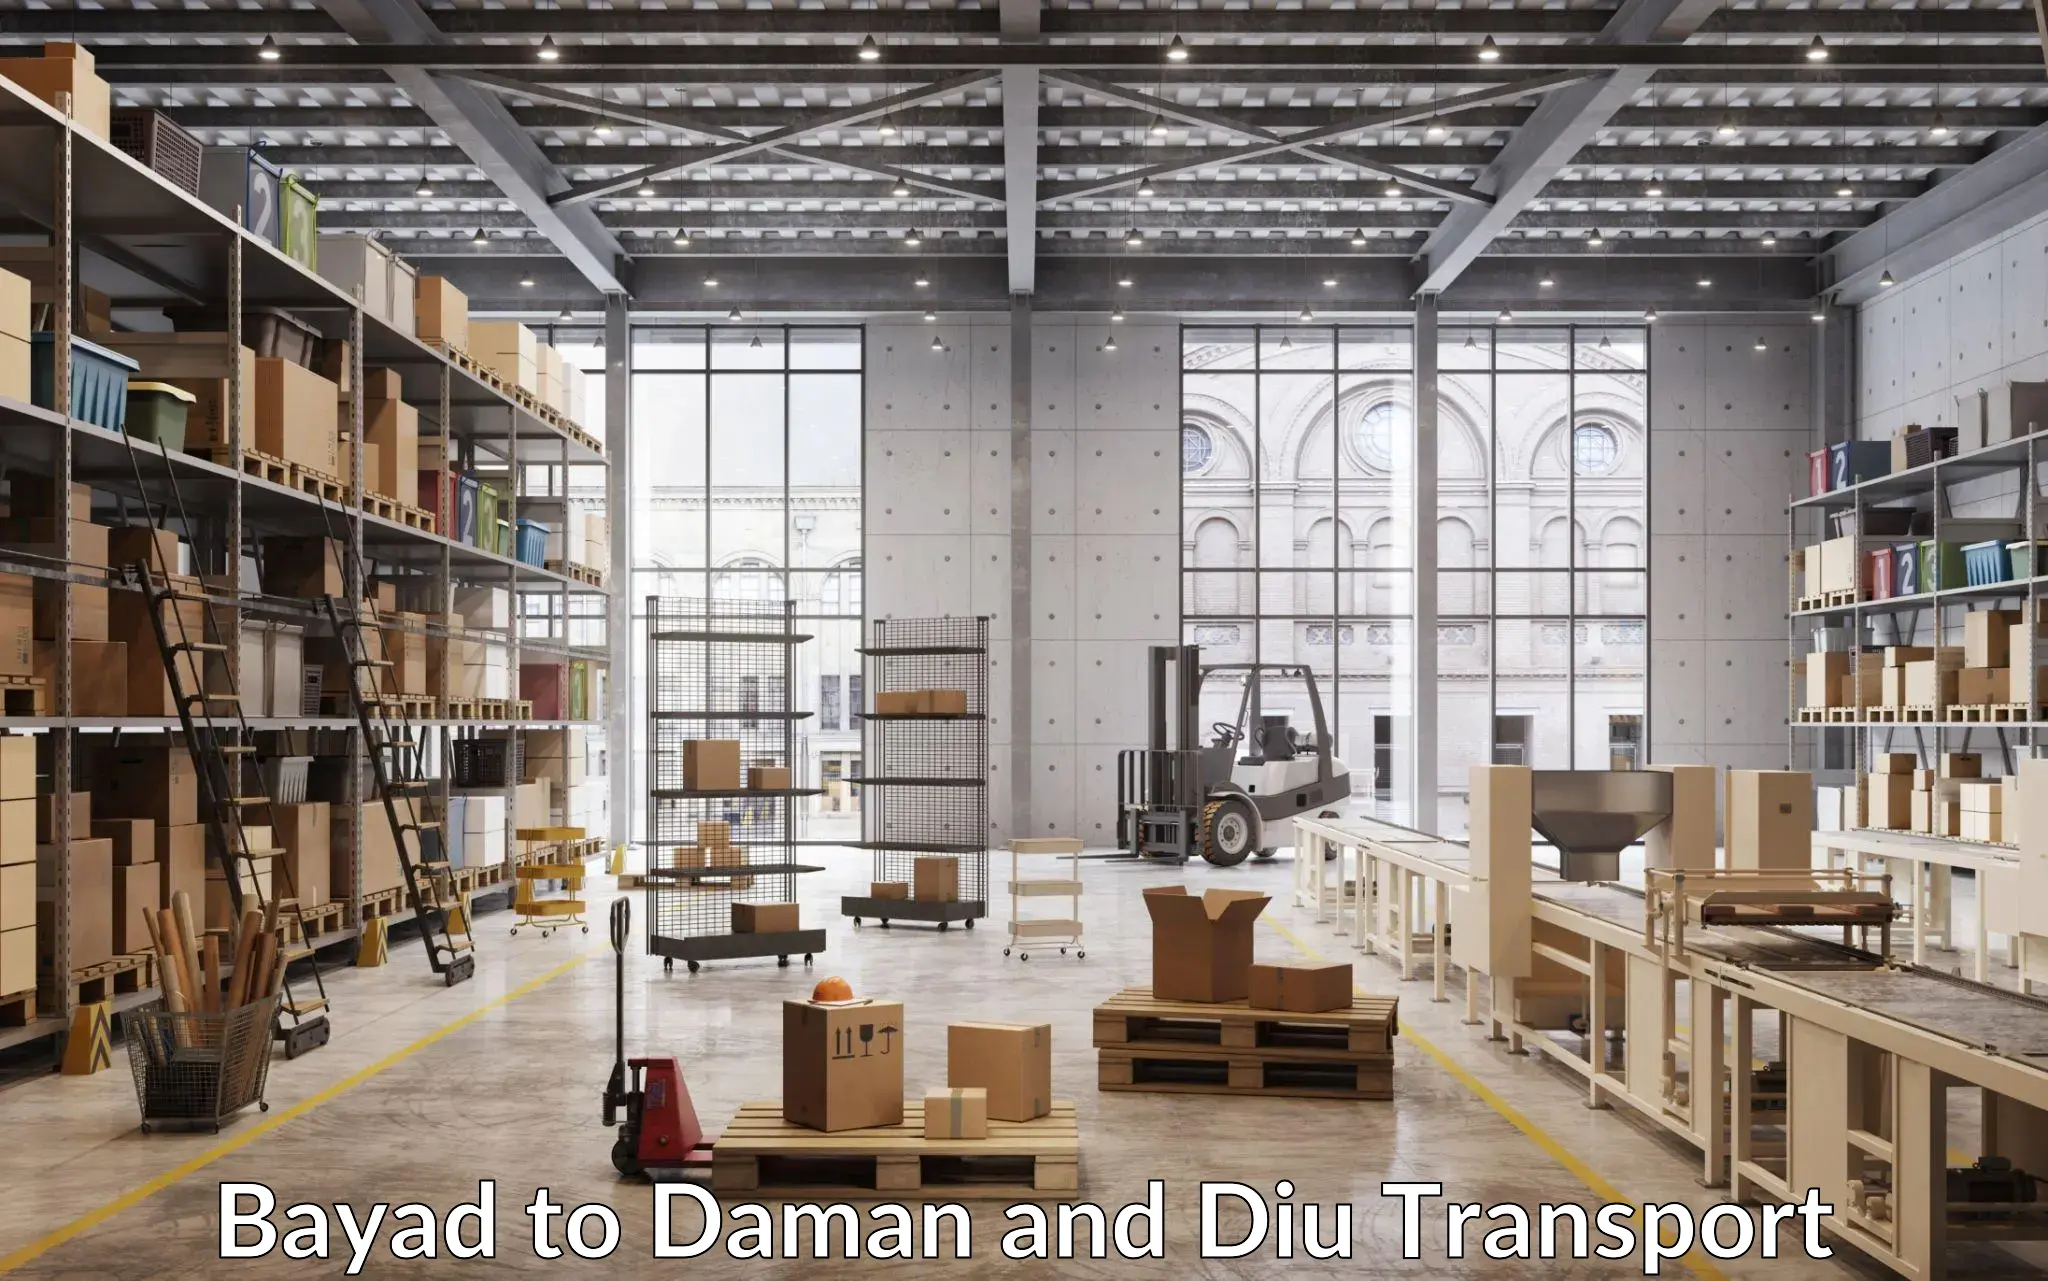 Lorry transport service Bayad to Daman and Diu